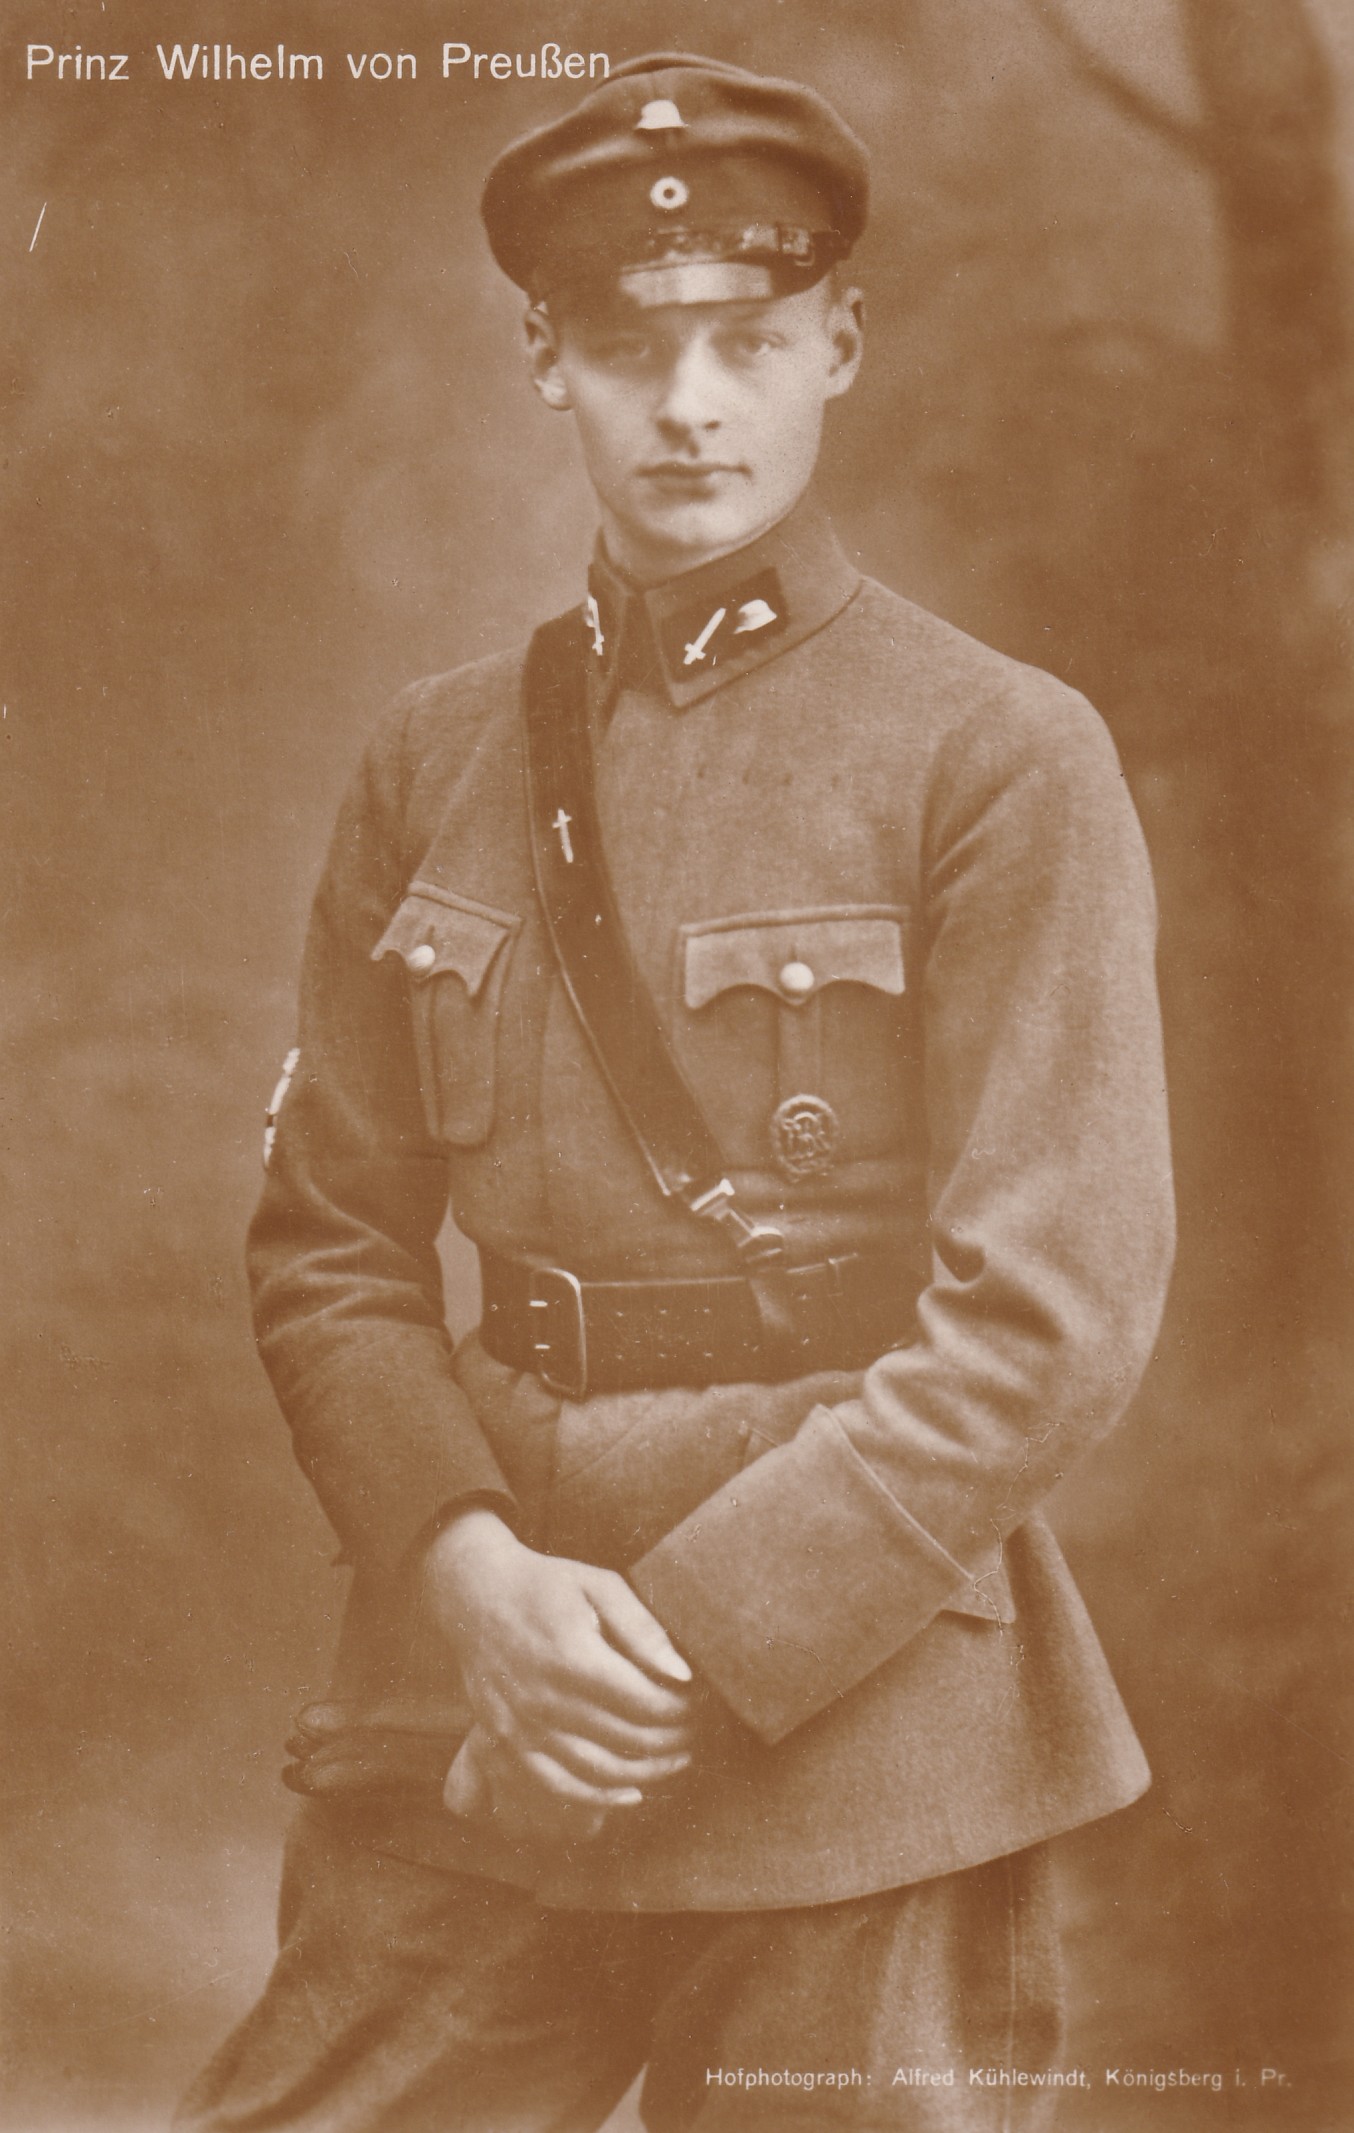 Bildpostkarte mit Foto des Prinzen Wilhelm von Preußen (1906-1940), 1933 (Schloß Wernigerode GmbH RR-F)